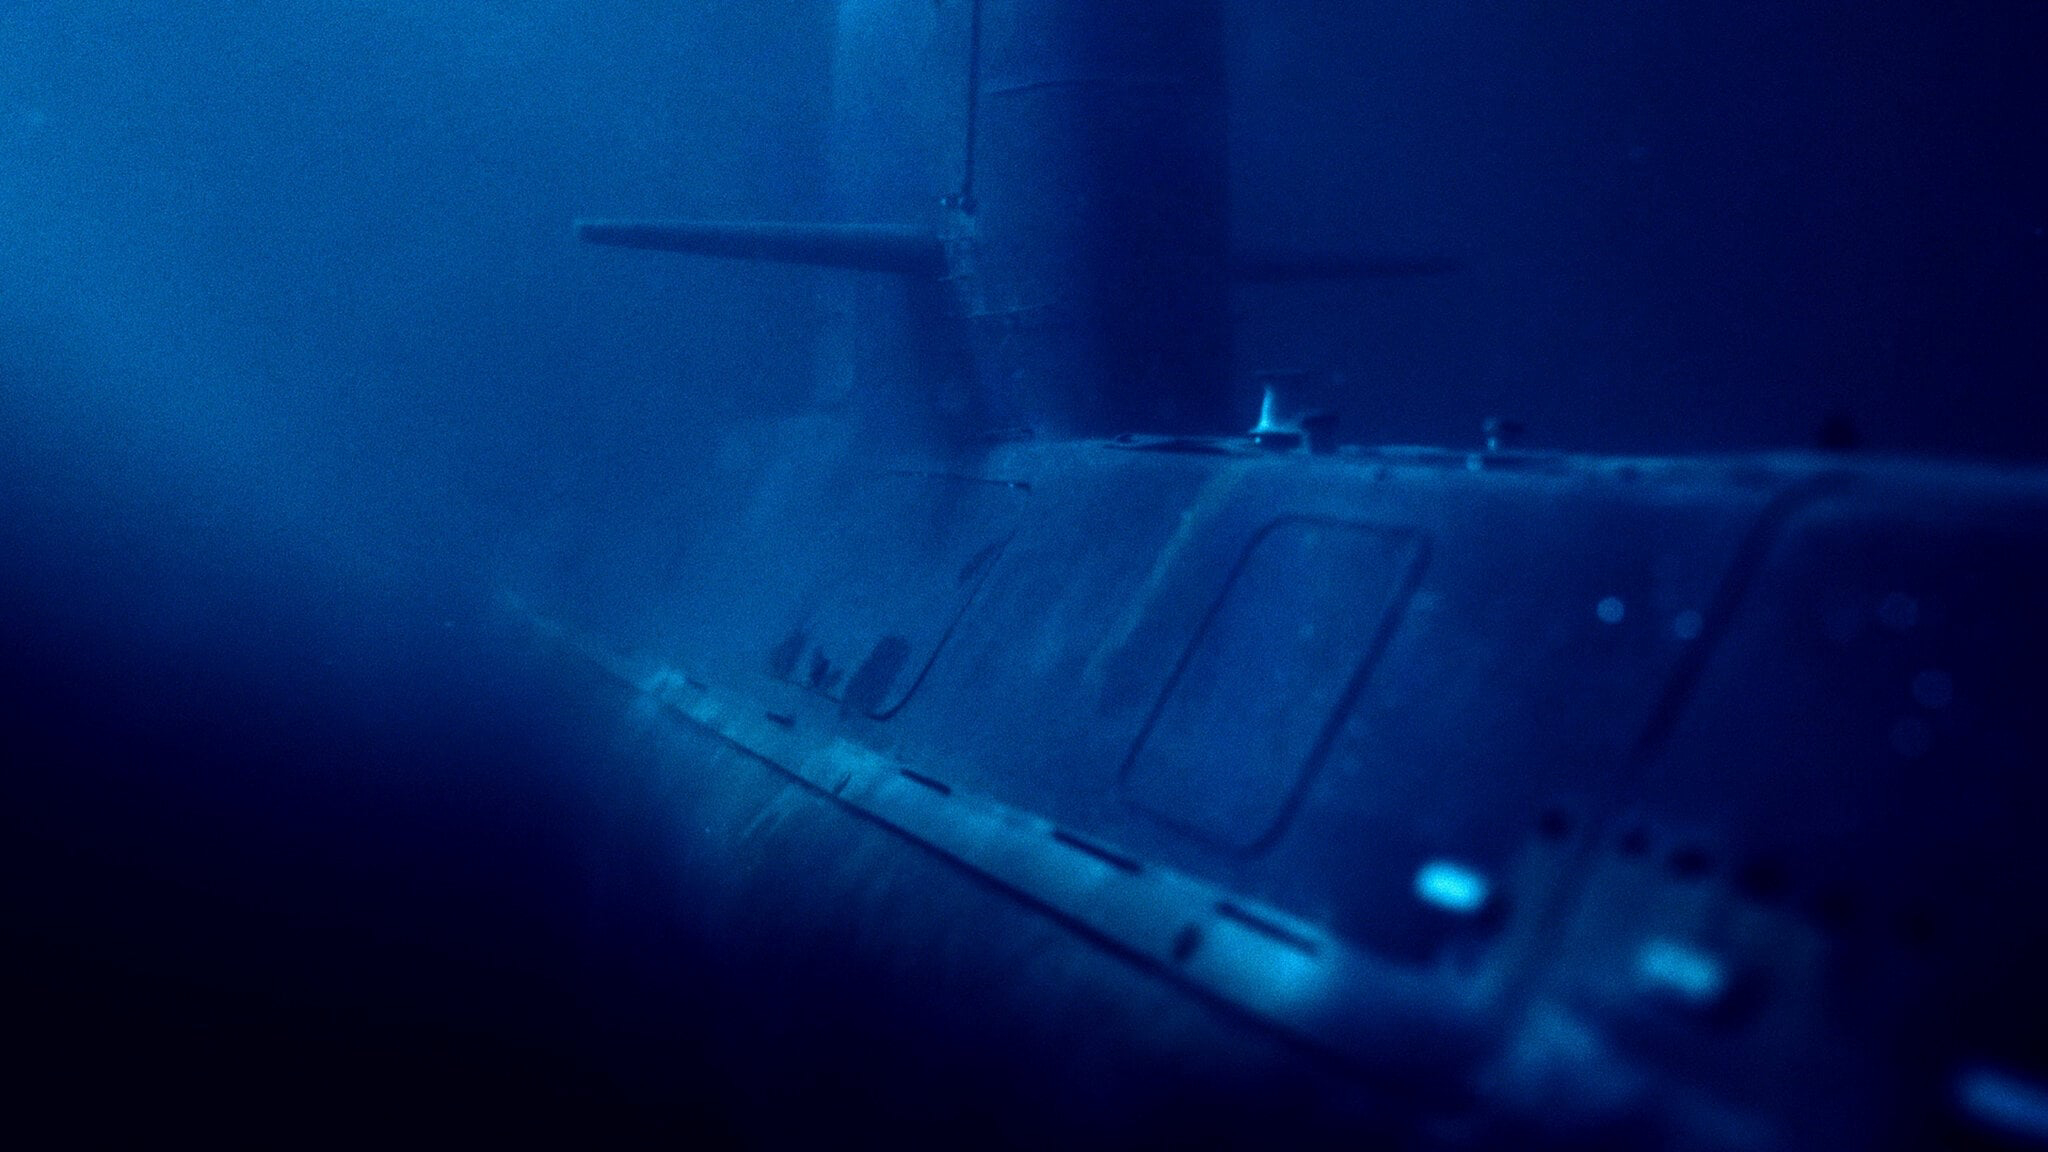 ARA San Juan: Chiếc tàu ngầm mất tích